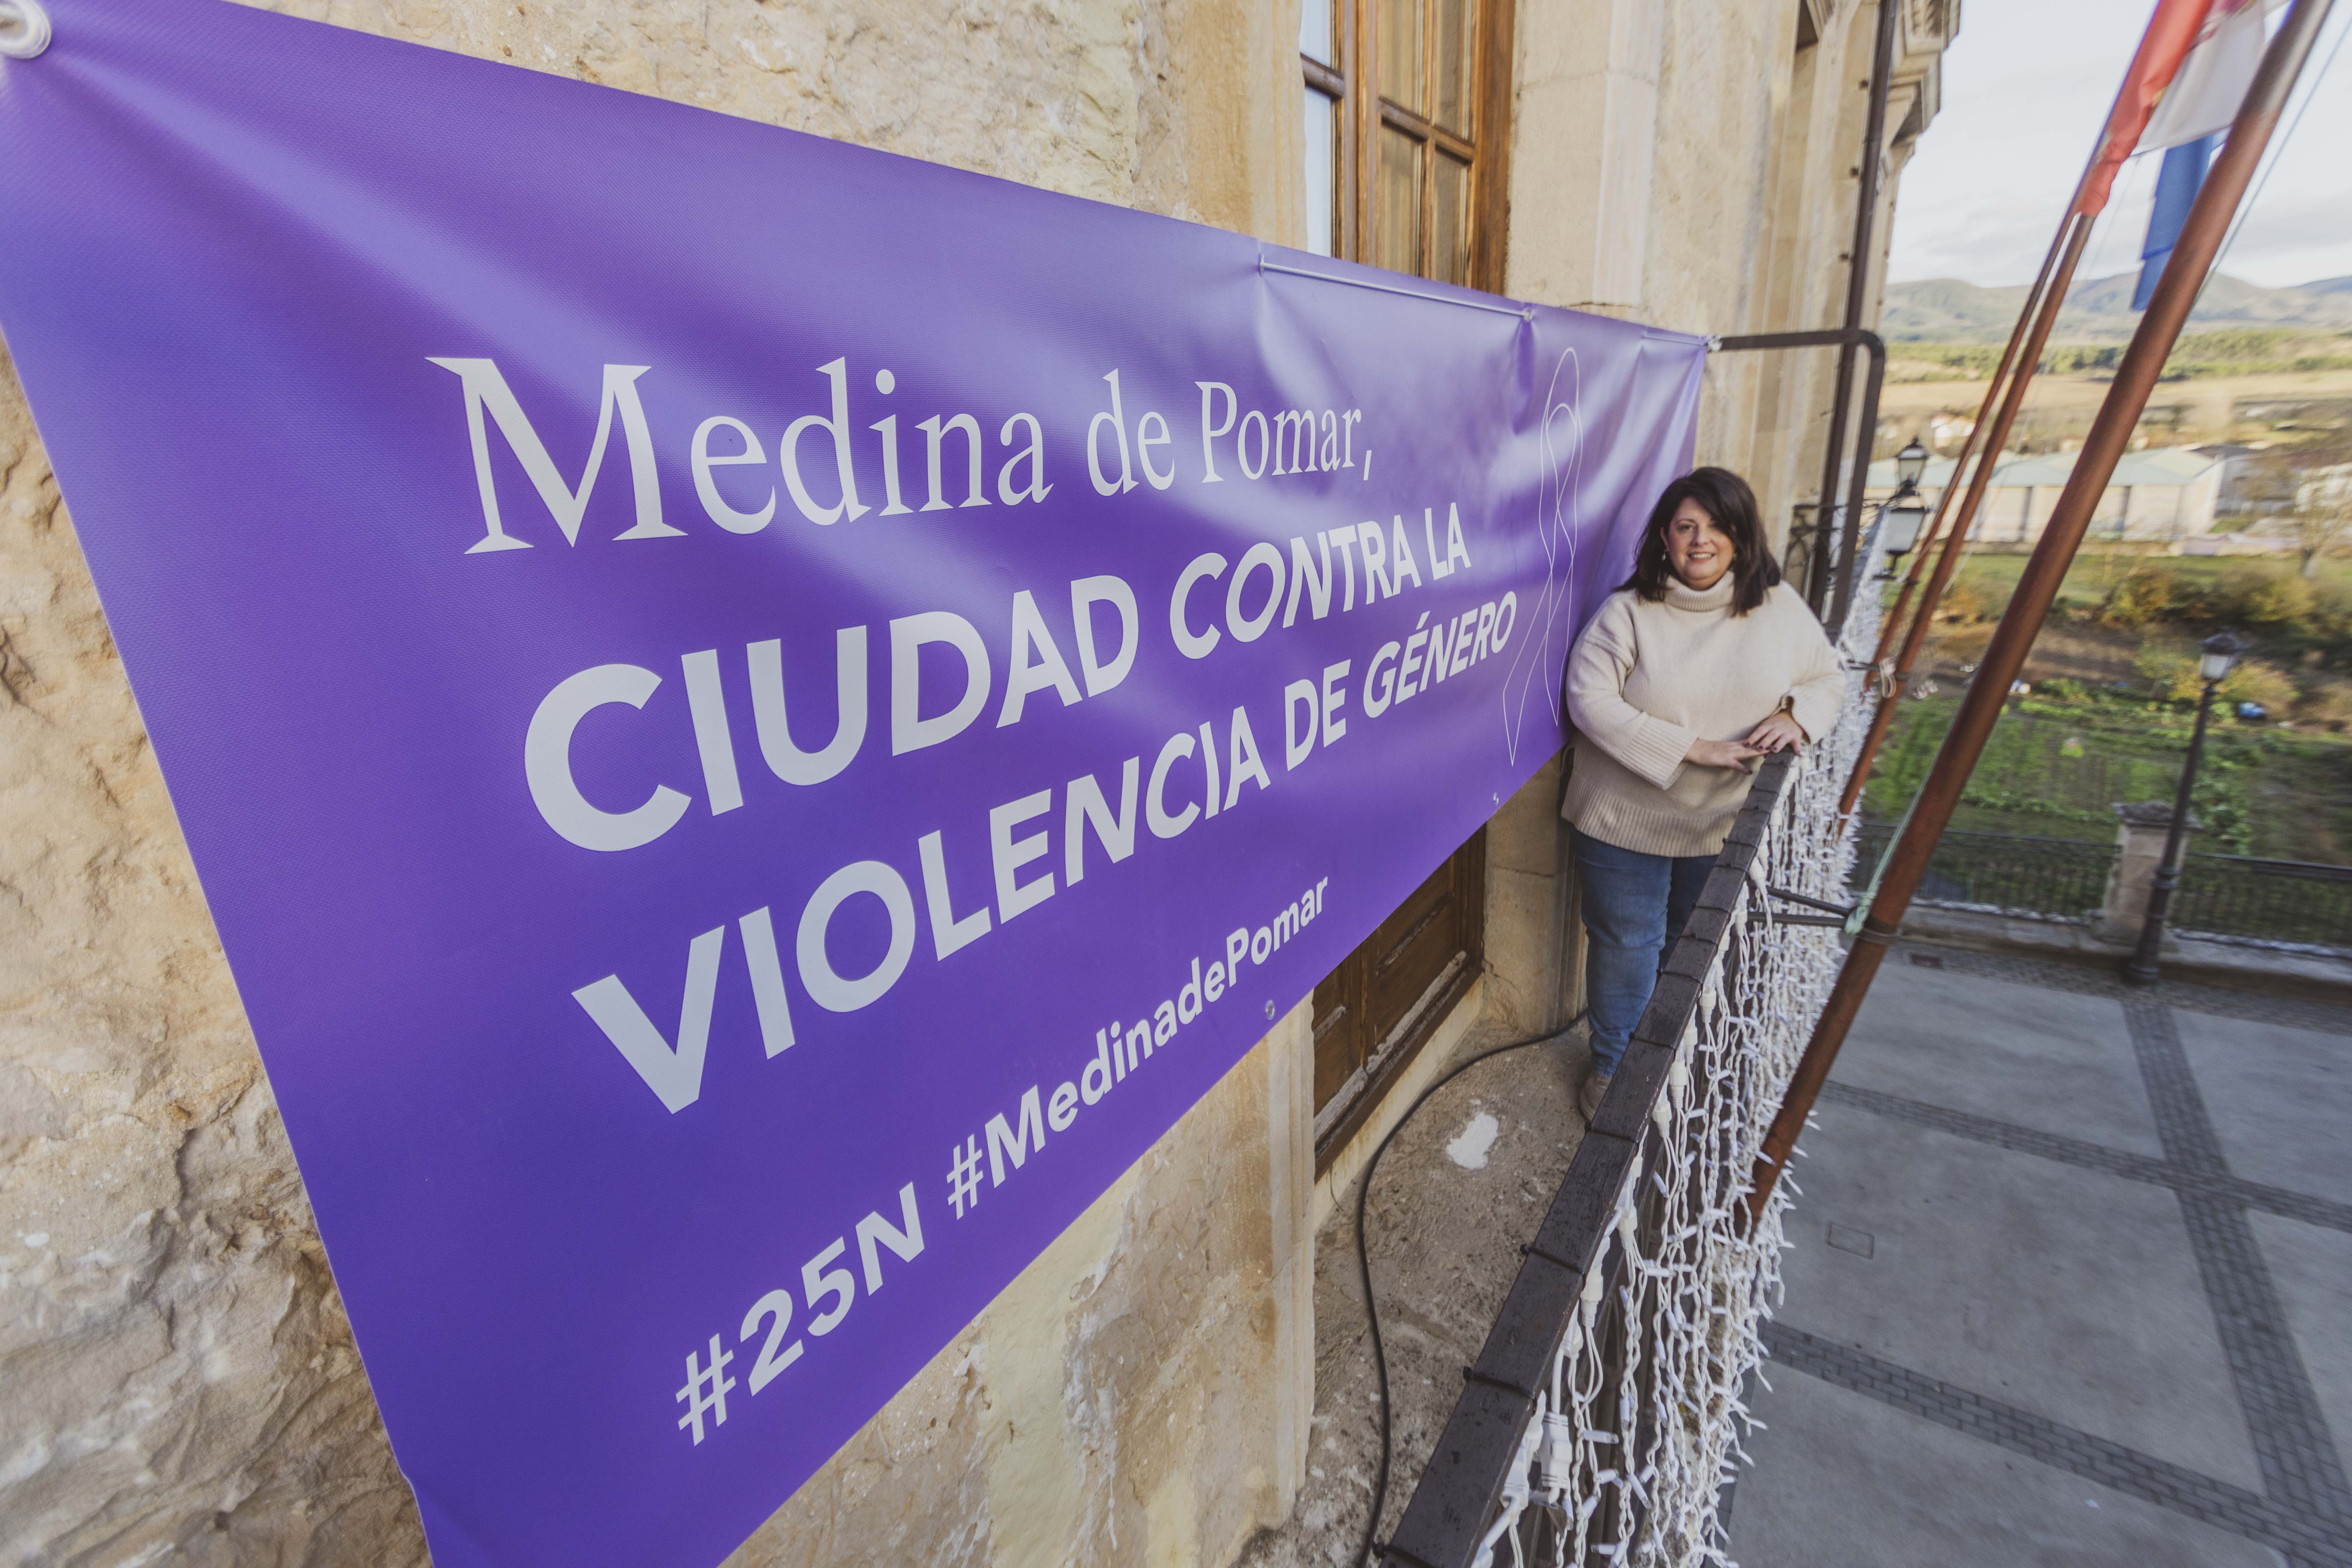 Medina de Pomar, ciudad contra la violencia de género